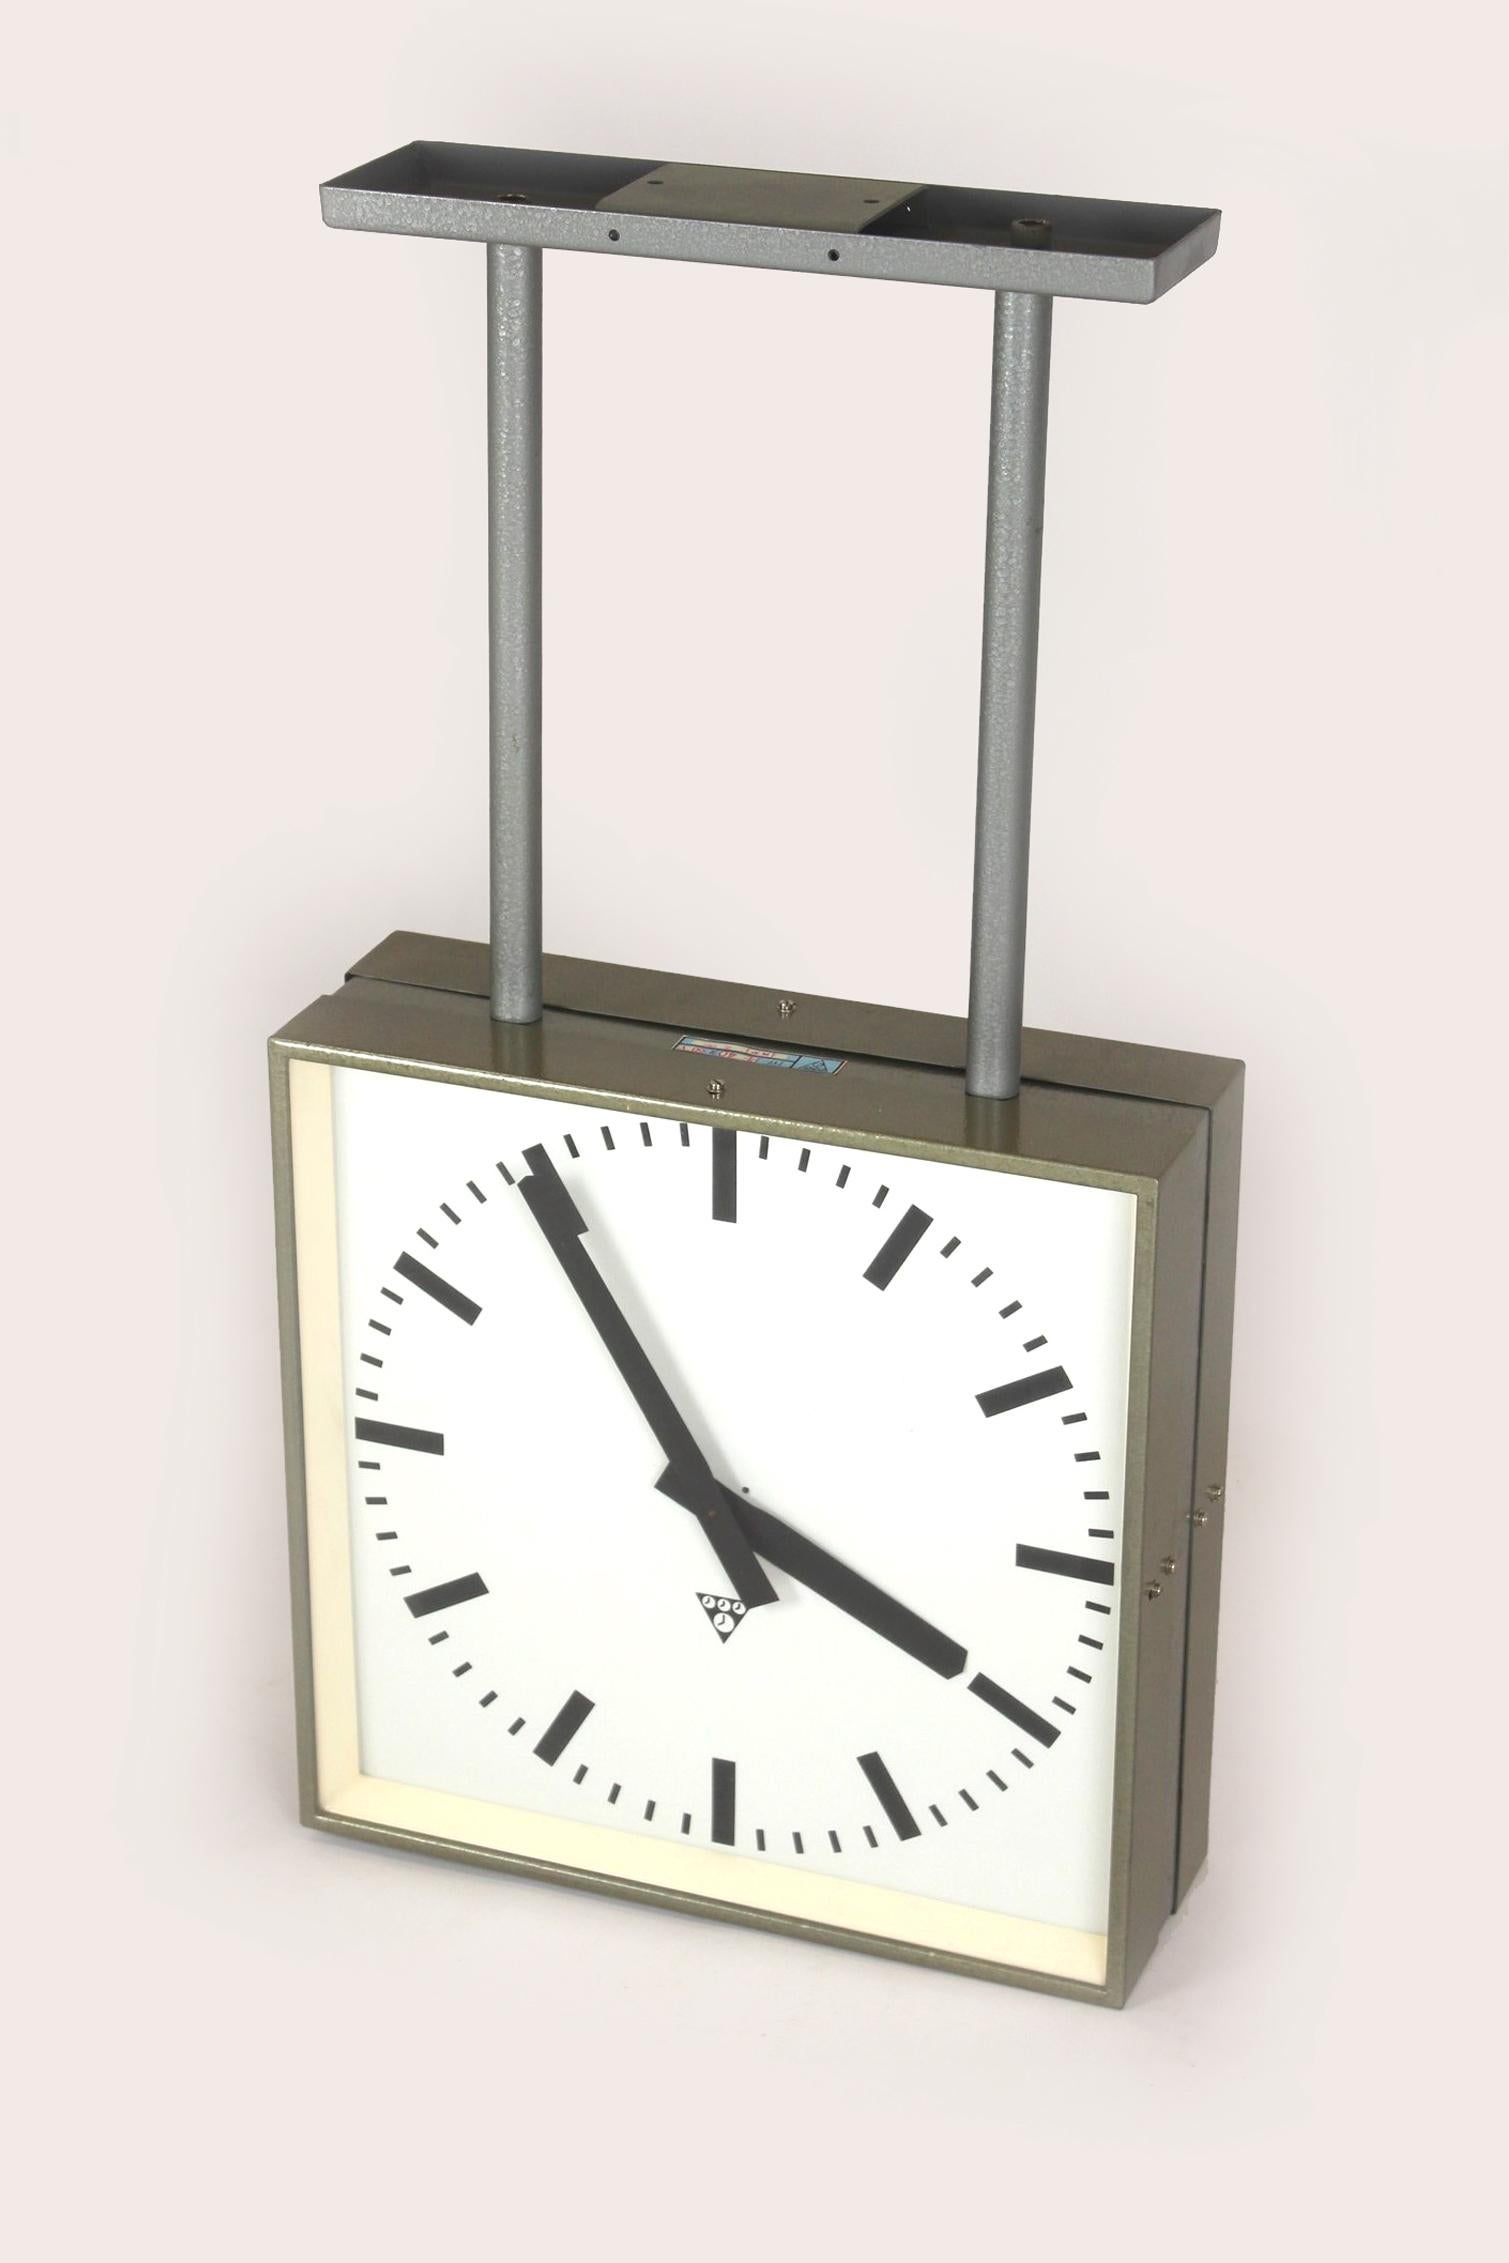 Grande horloge ferroviaire double face fabriquée par Pragotron dans l'ancienne Tchécoslovaquie dans les années 1980.
L'horloge est neuve, elle n'a jamais été utilisée. Emballé dans sa boîte d'origine, il a été assemblé pour les besoins de la photo